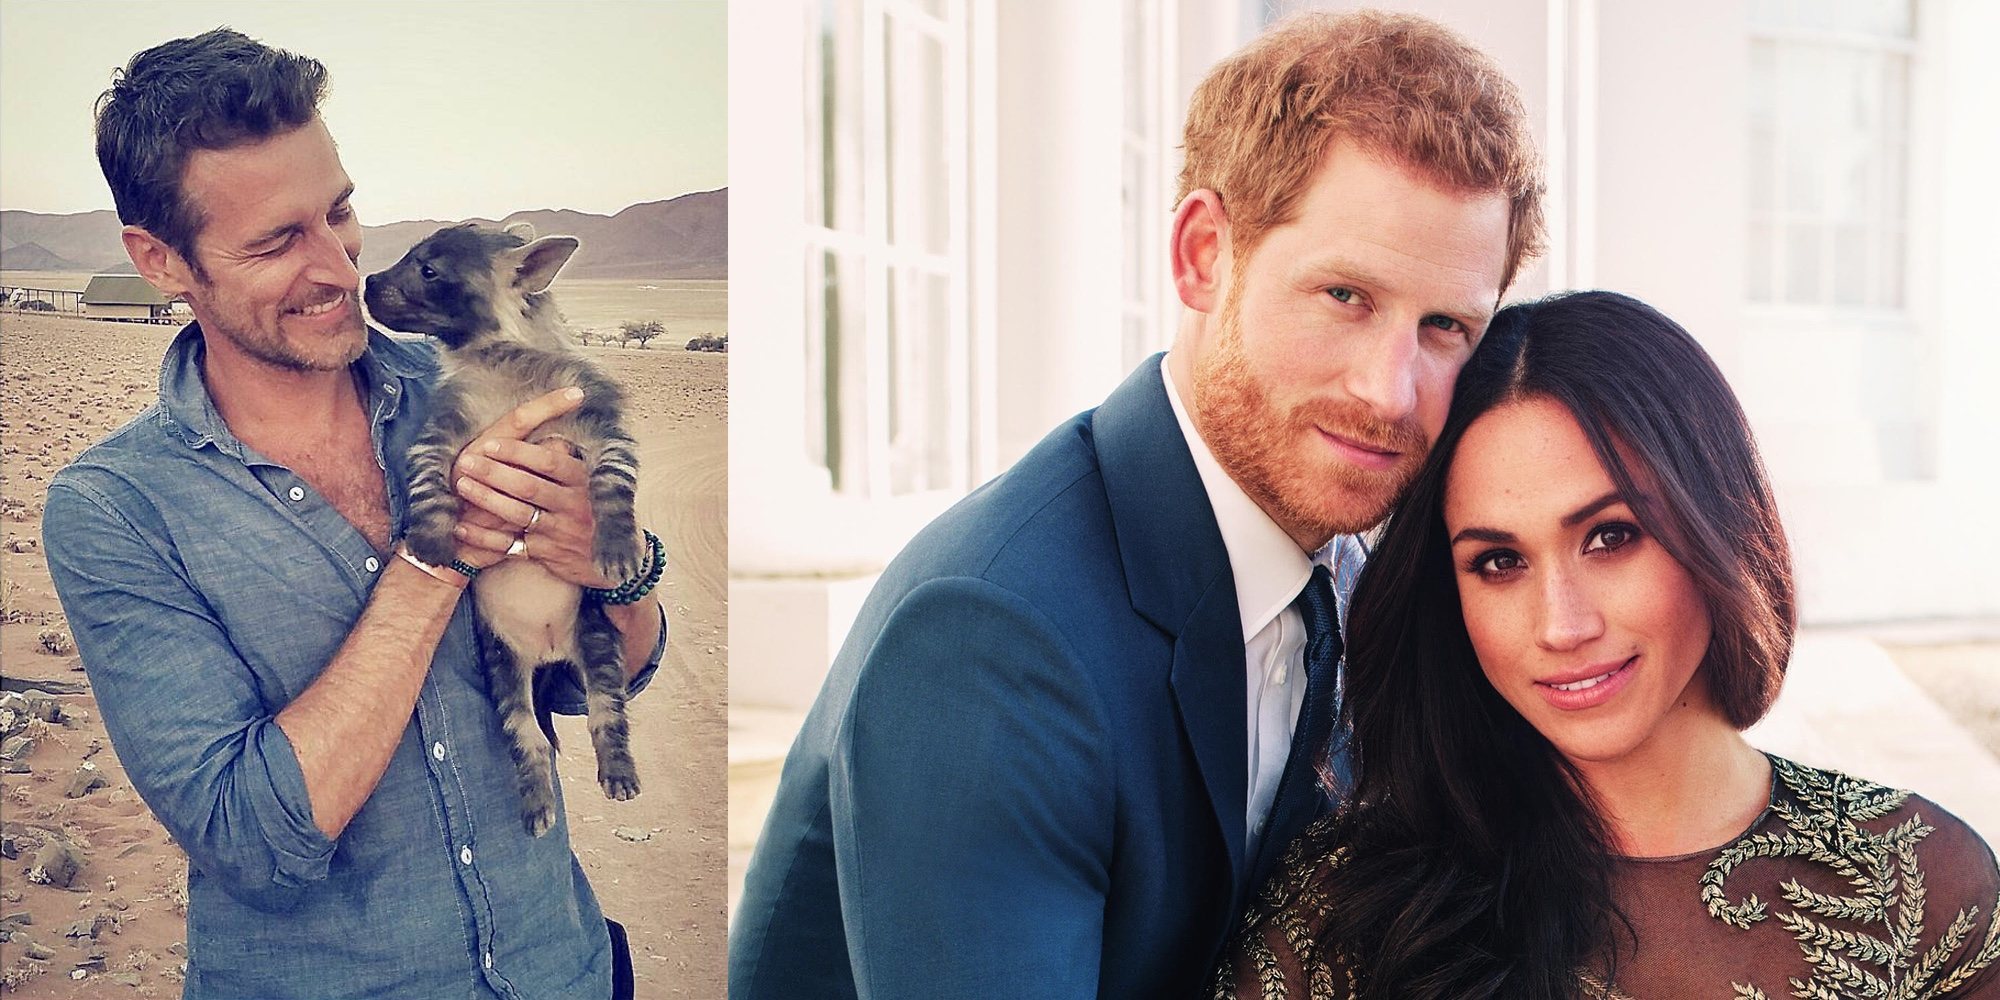 Conoce a Alexi Lubomirski, el fotógrafo 'royal' elegido por el Príncipe Harry y Meghan Markle para las fotos de su boda